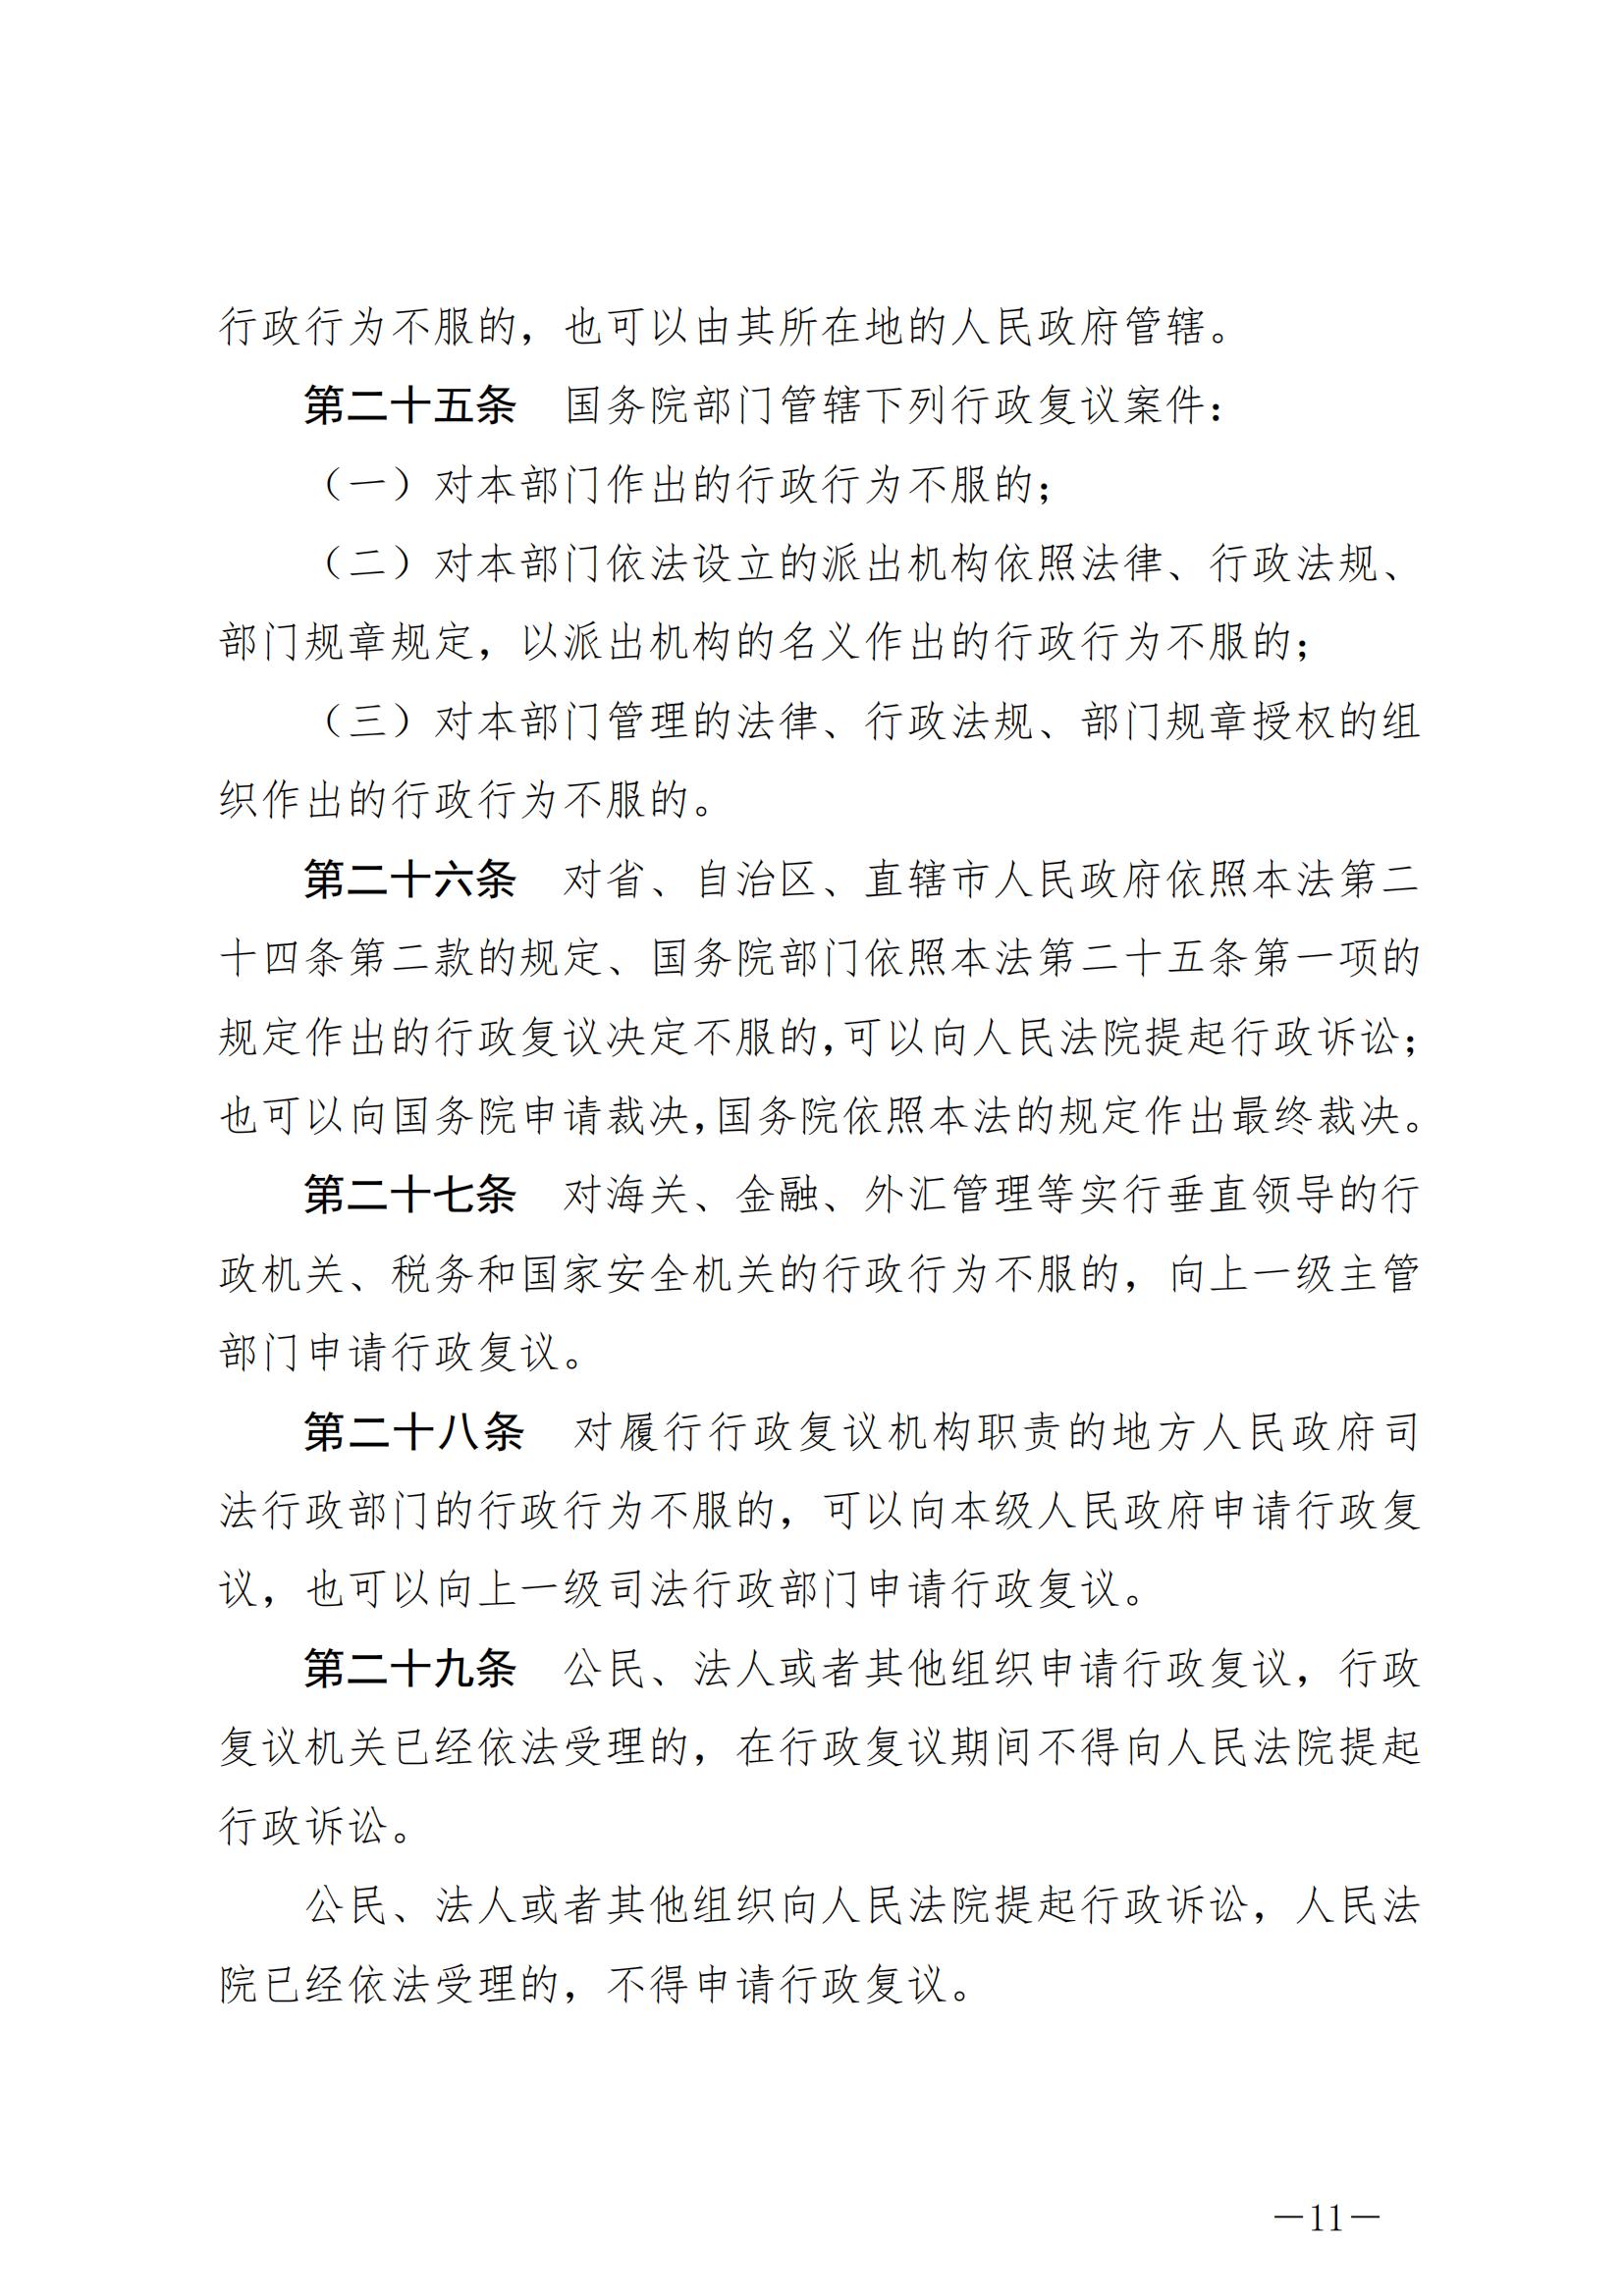 《中华人民共和国行政复议法》_20231204154310_10.jpg